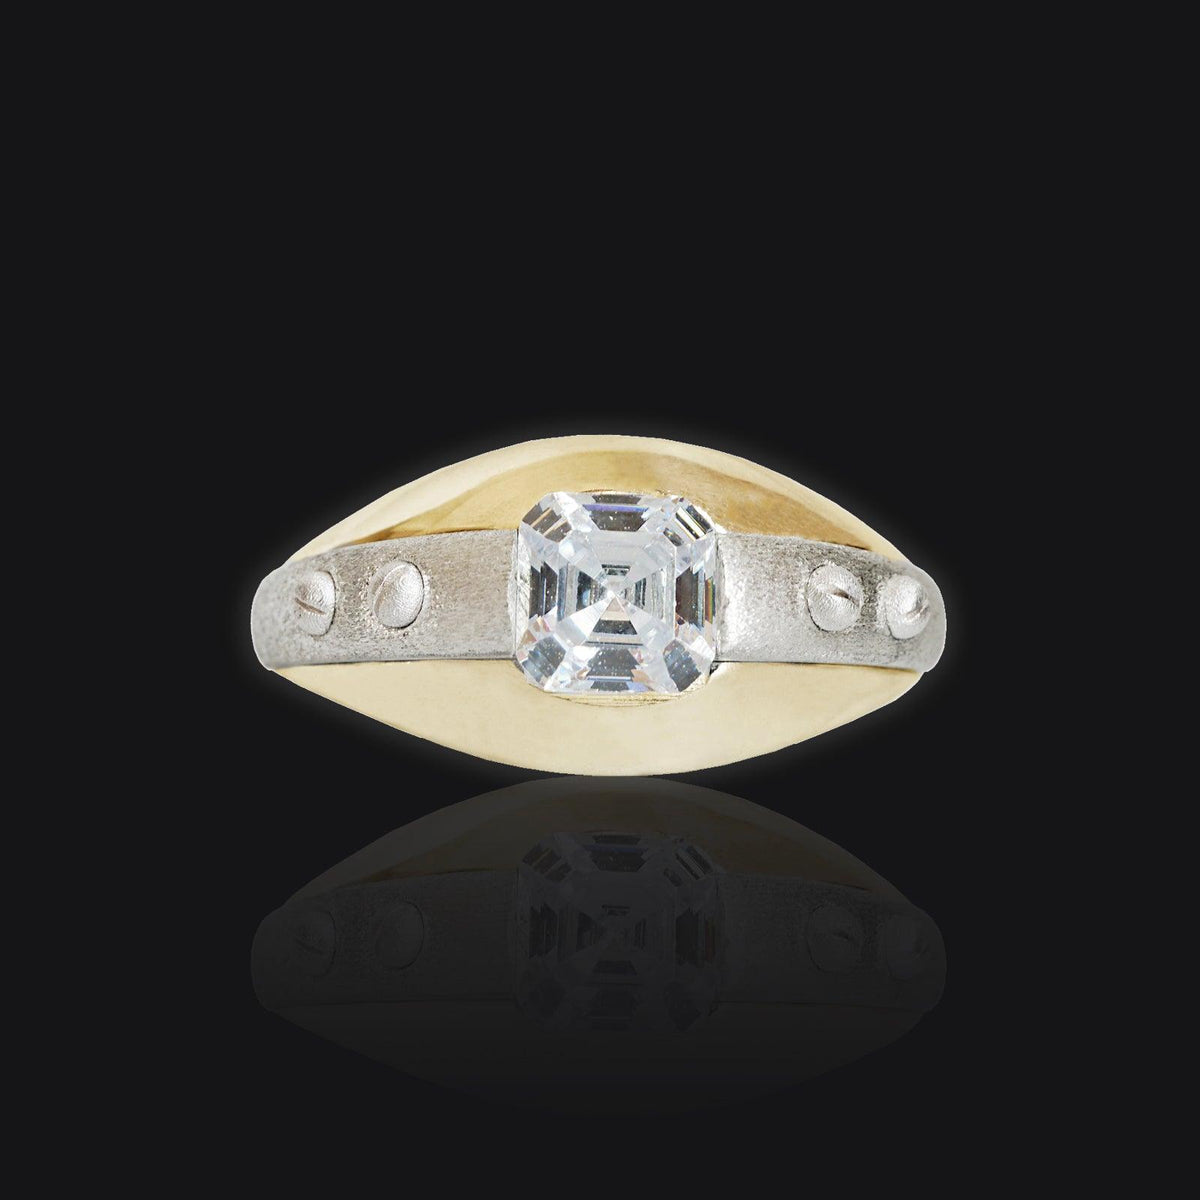 Futuristic Ring in 14K Gold, 11mm